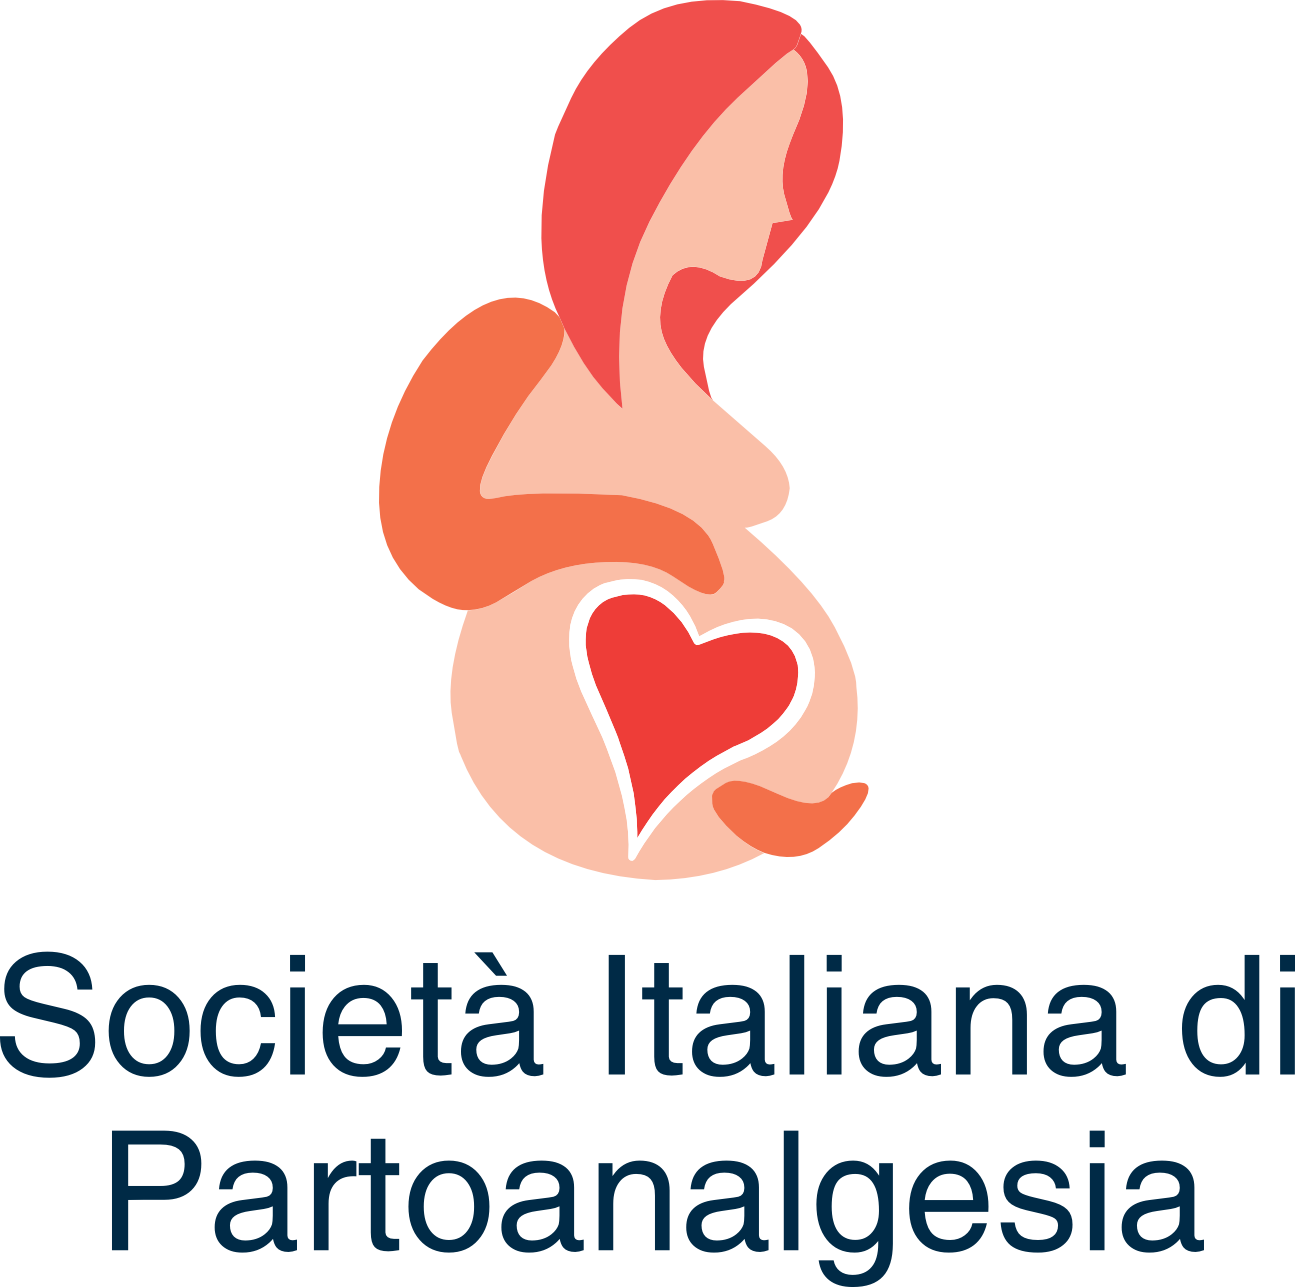 Società Italiana di Partoanalgesia